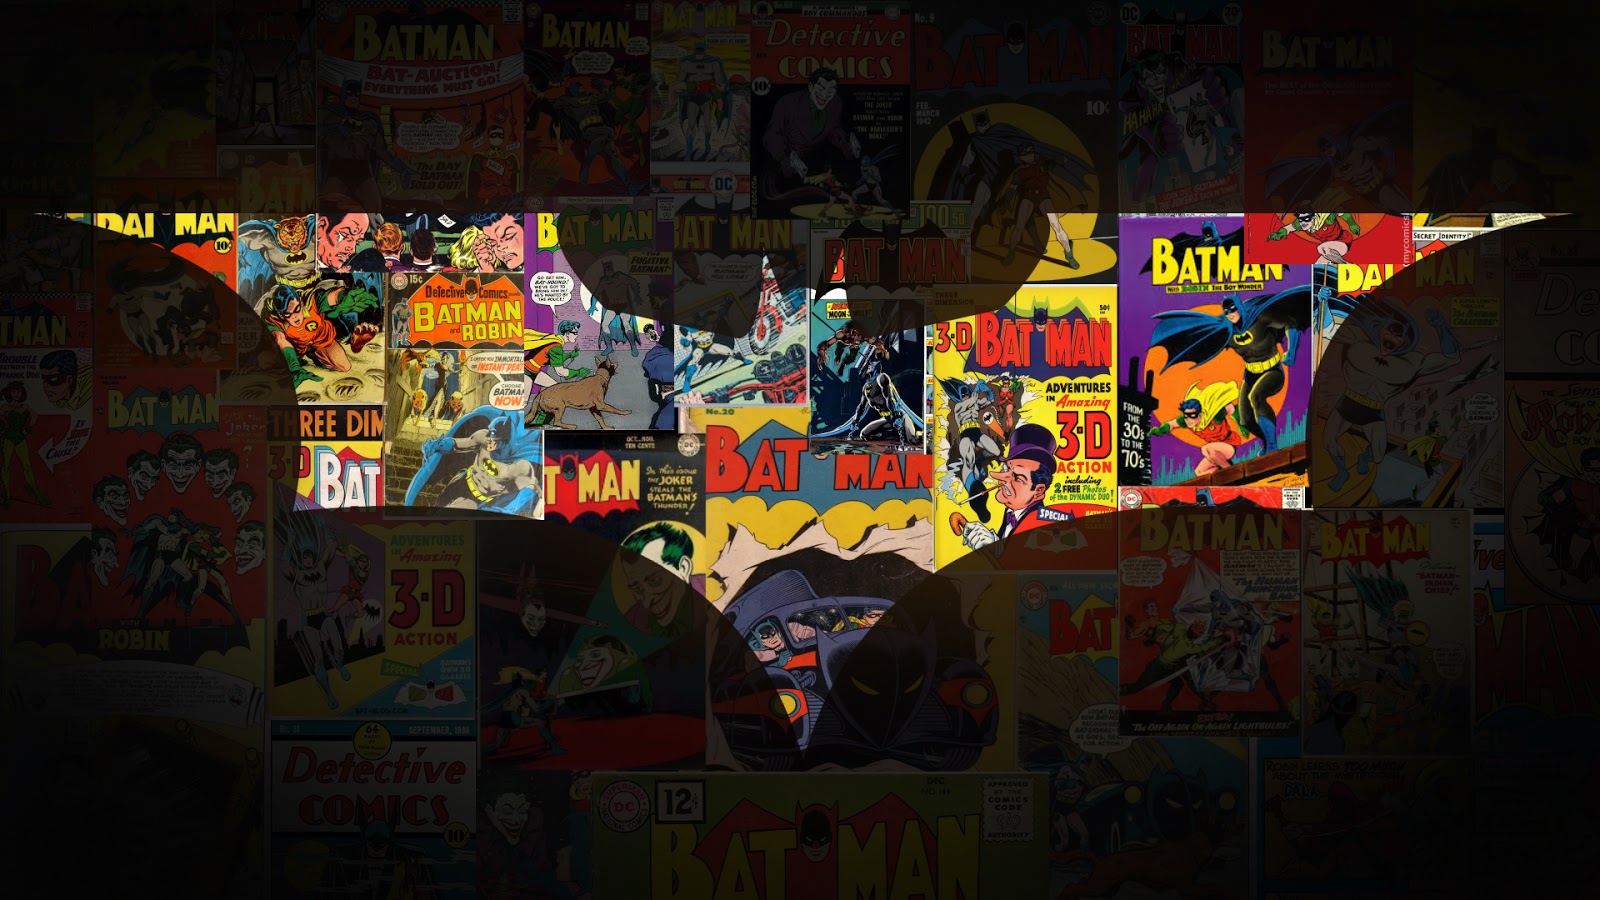 comics - [Descargas][Comics] Batman (1987 - 2006) Parte 1  D79z121-7db984d8-ea98-4844-9ca3-6da713826e5f